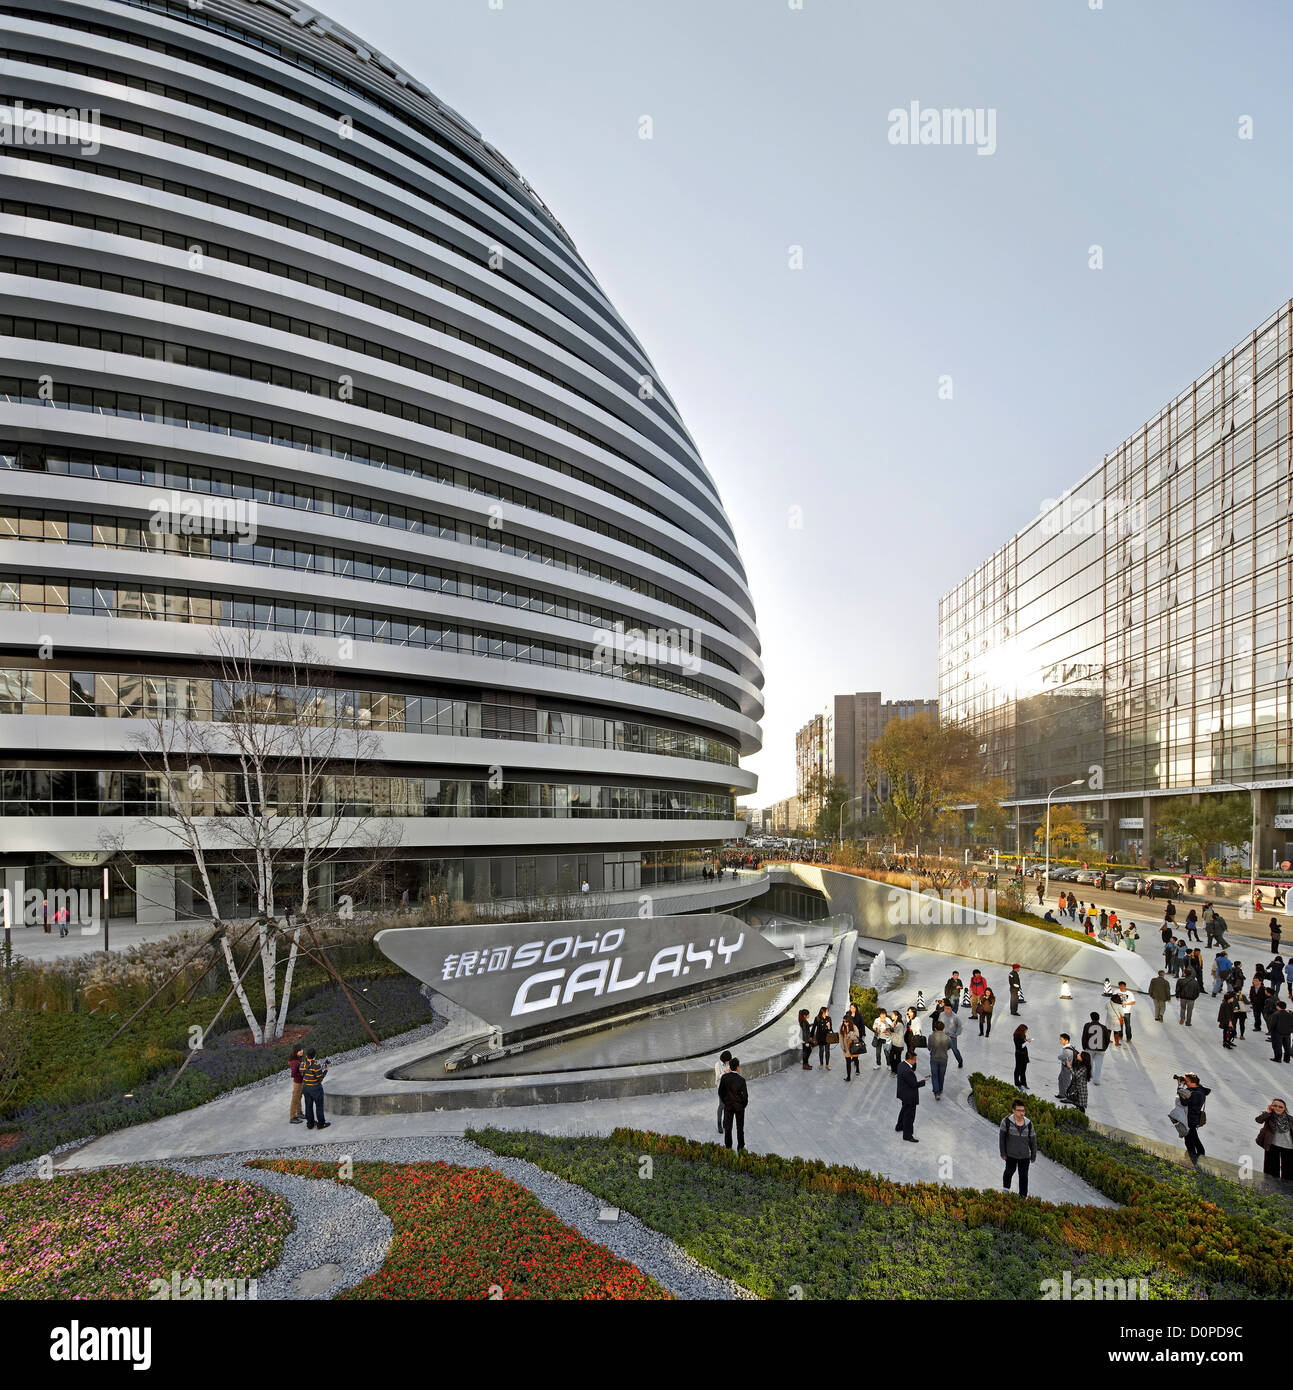 Galaxy Soho, Beijing, Chine. Architecte : Zaha Hadid Architects, 2012. Scène de rue bondée avec Dome. Banque D'Images